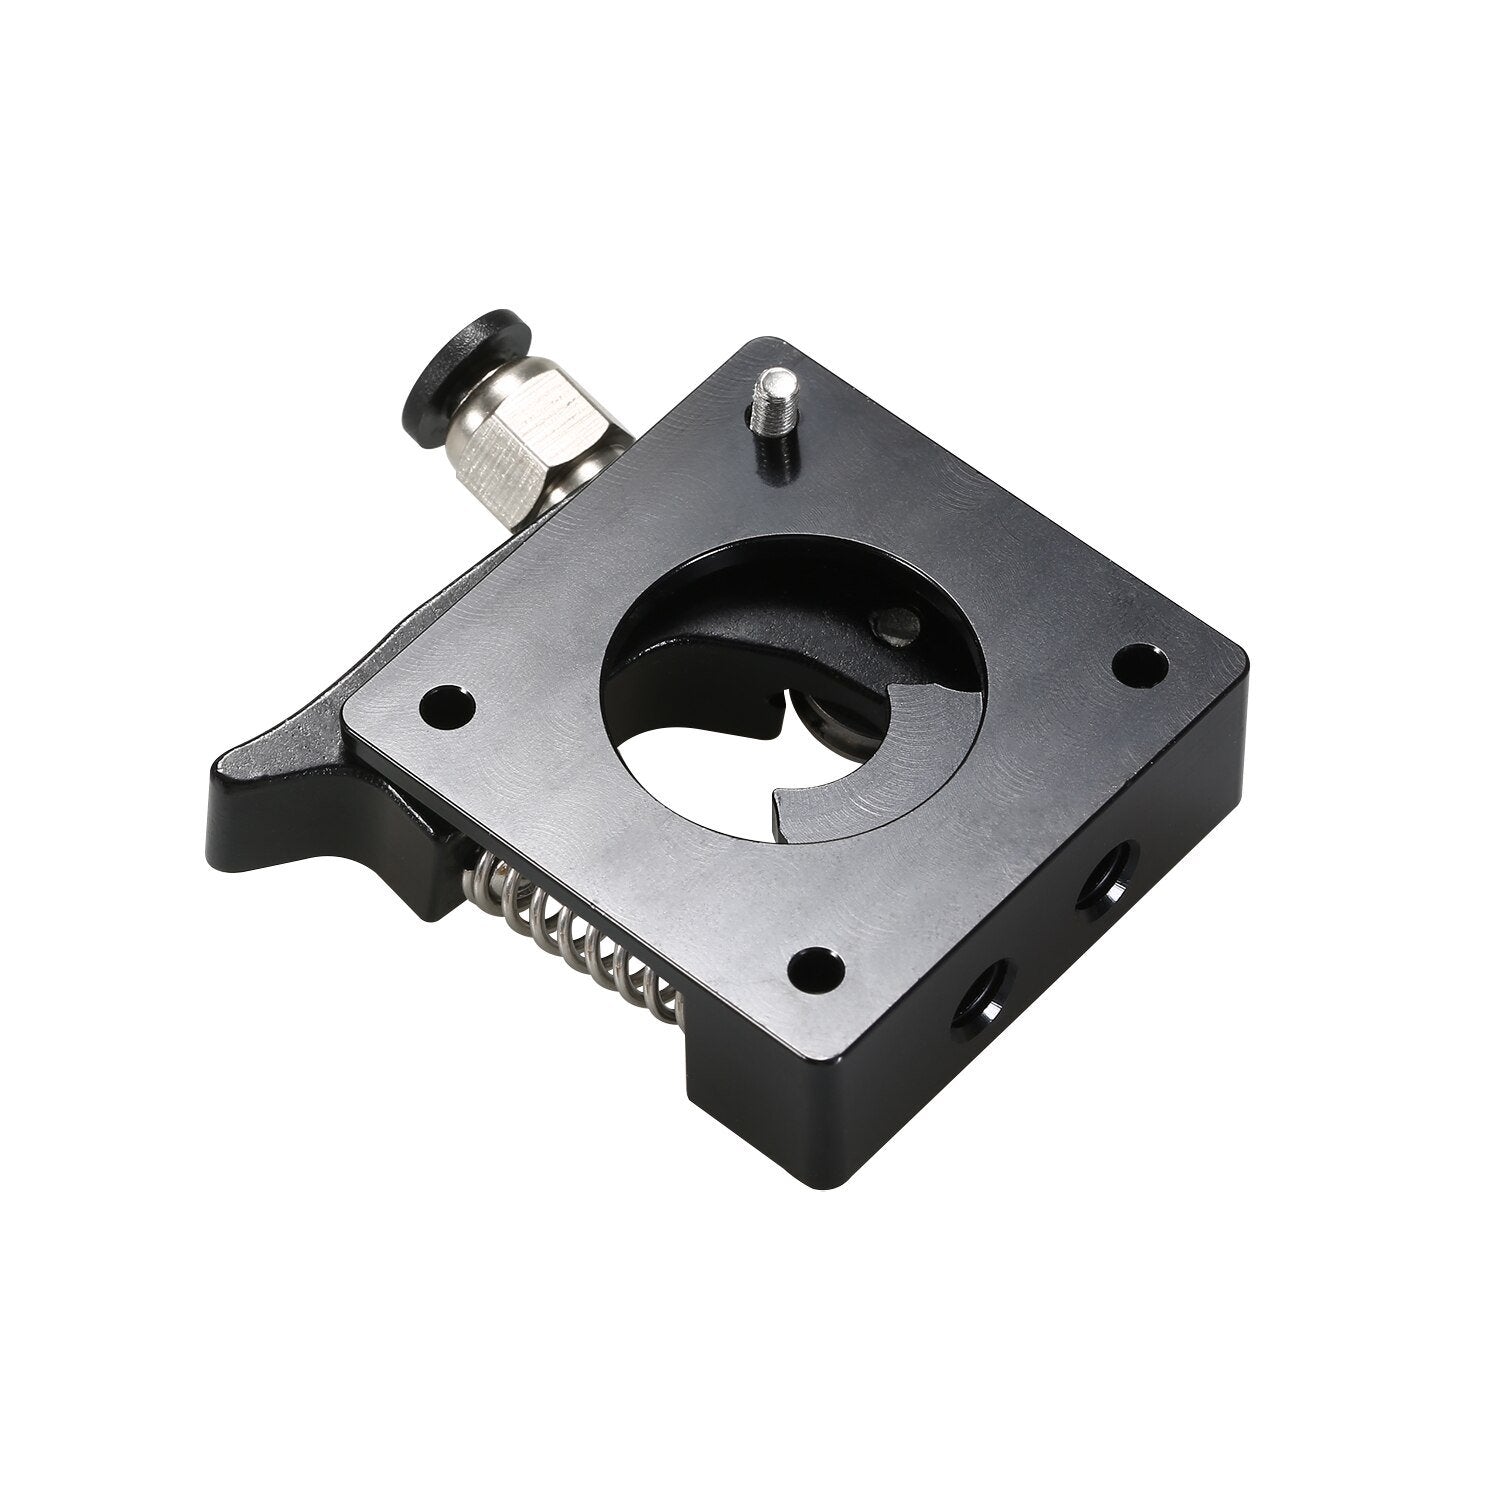 Black MK8 3D Printer Extruder Drive Kit for Creality Ender 3/Pro/V2 CR-10/S/S4/5